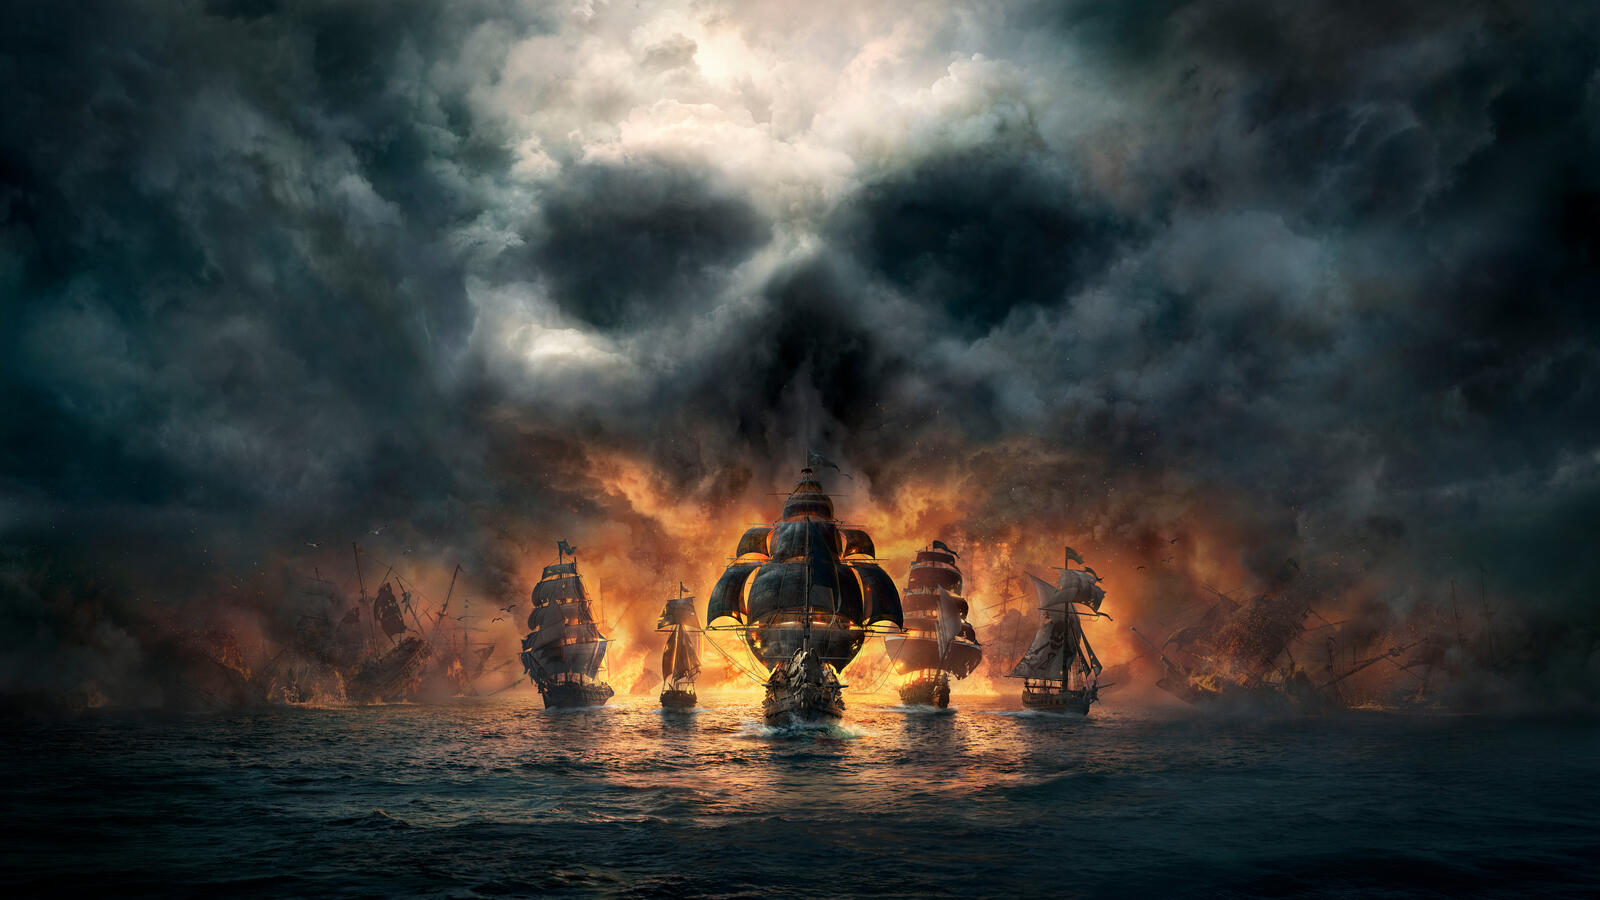 Бесплатное фото Пиратские корабли на фоне большого пожара в море